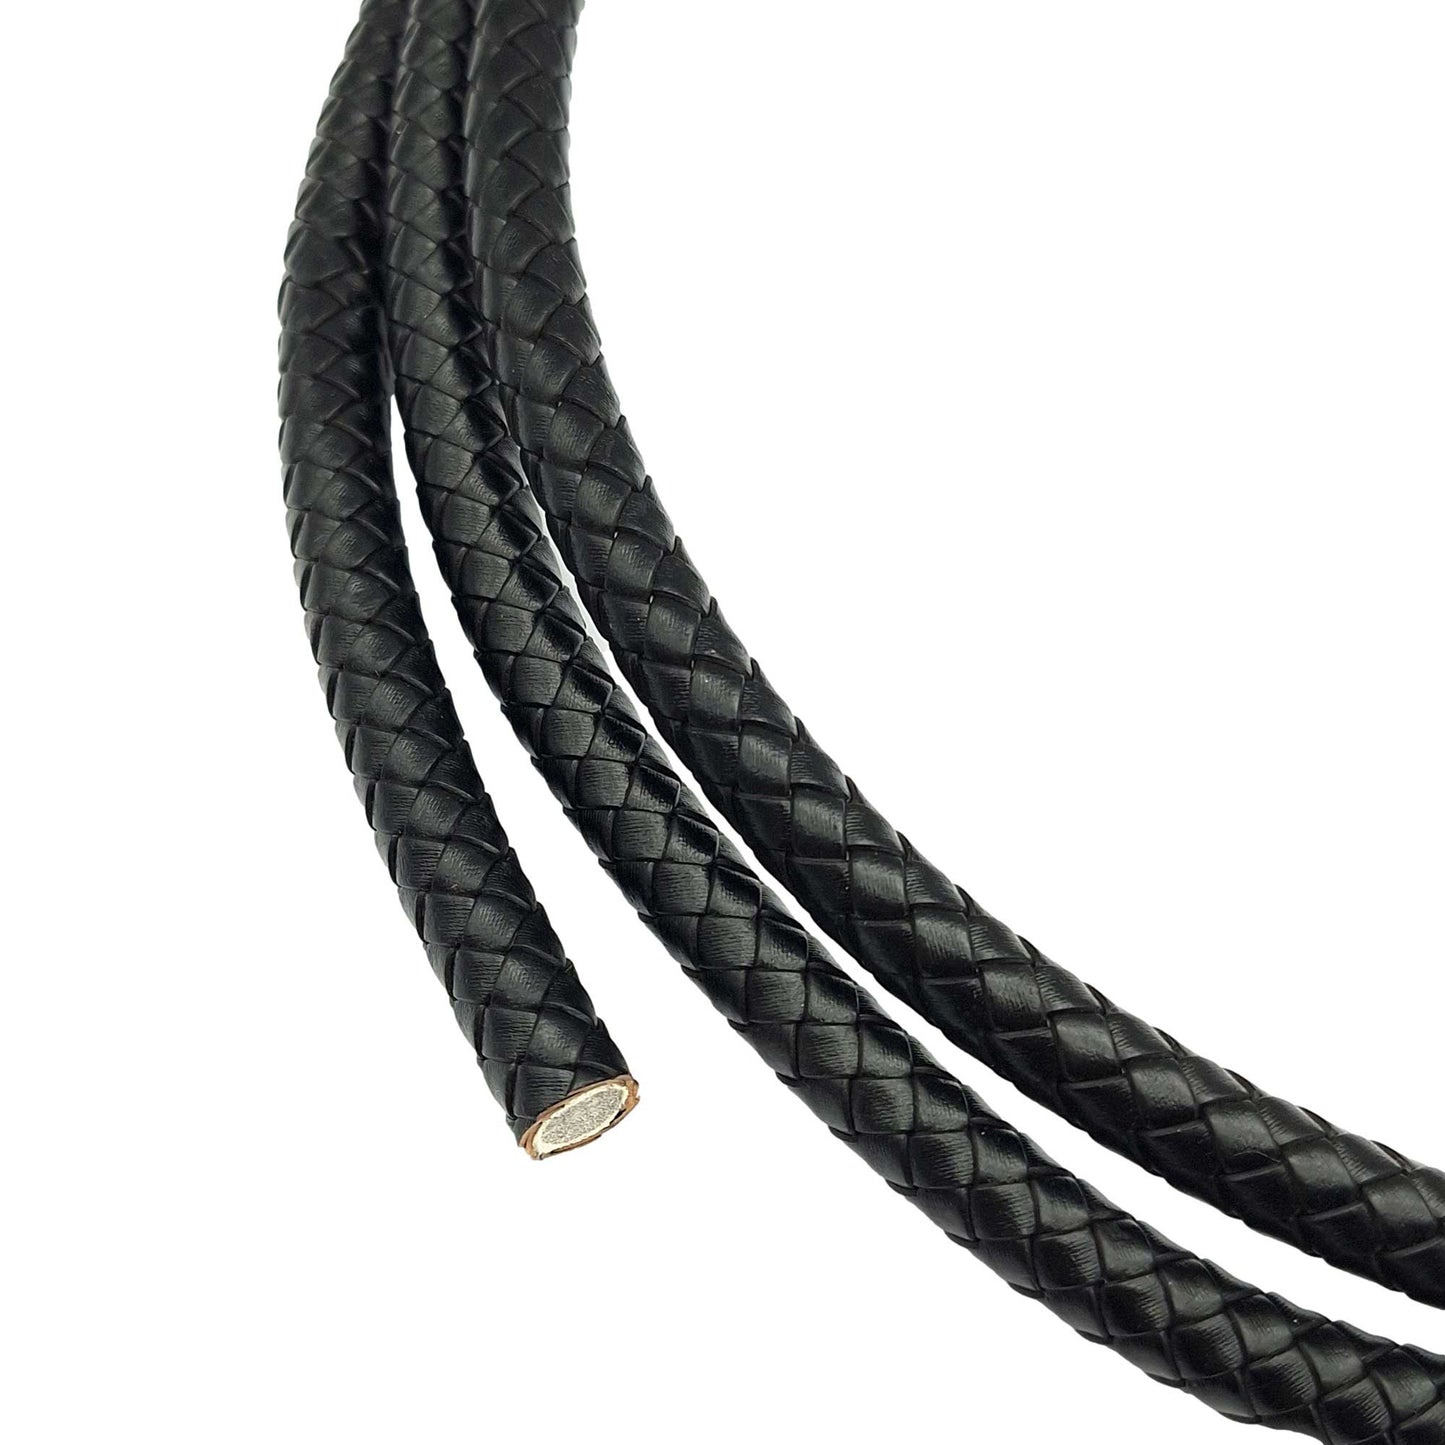 ShapesbyX Cordons Bolo en cuir tressé de 10 mm de diamètre, noir, pour la fabrication de bijoux, bracelet en cuir rond de 1 cm